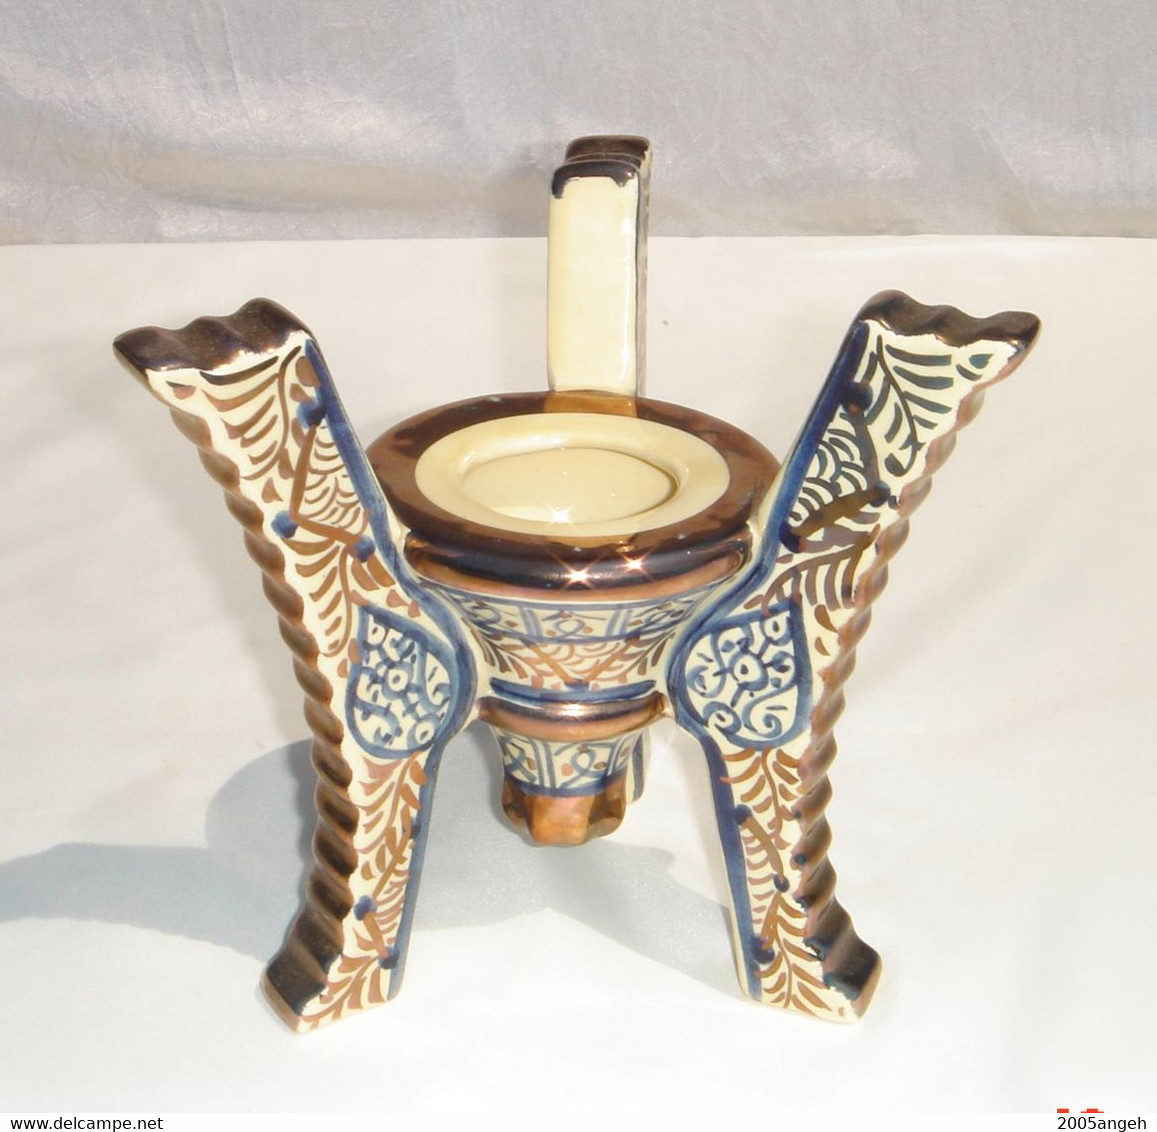 Vase de Manises avec son trépied en bon état - Hauteur total 34 cm - Diamètre 13 cm - Poids 1213 grs .